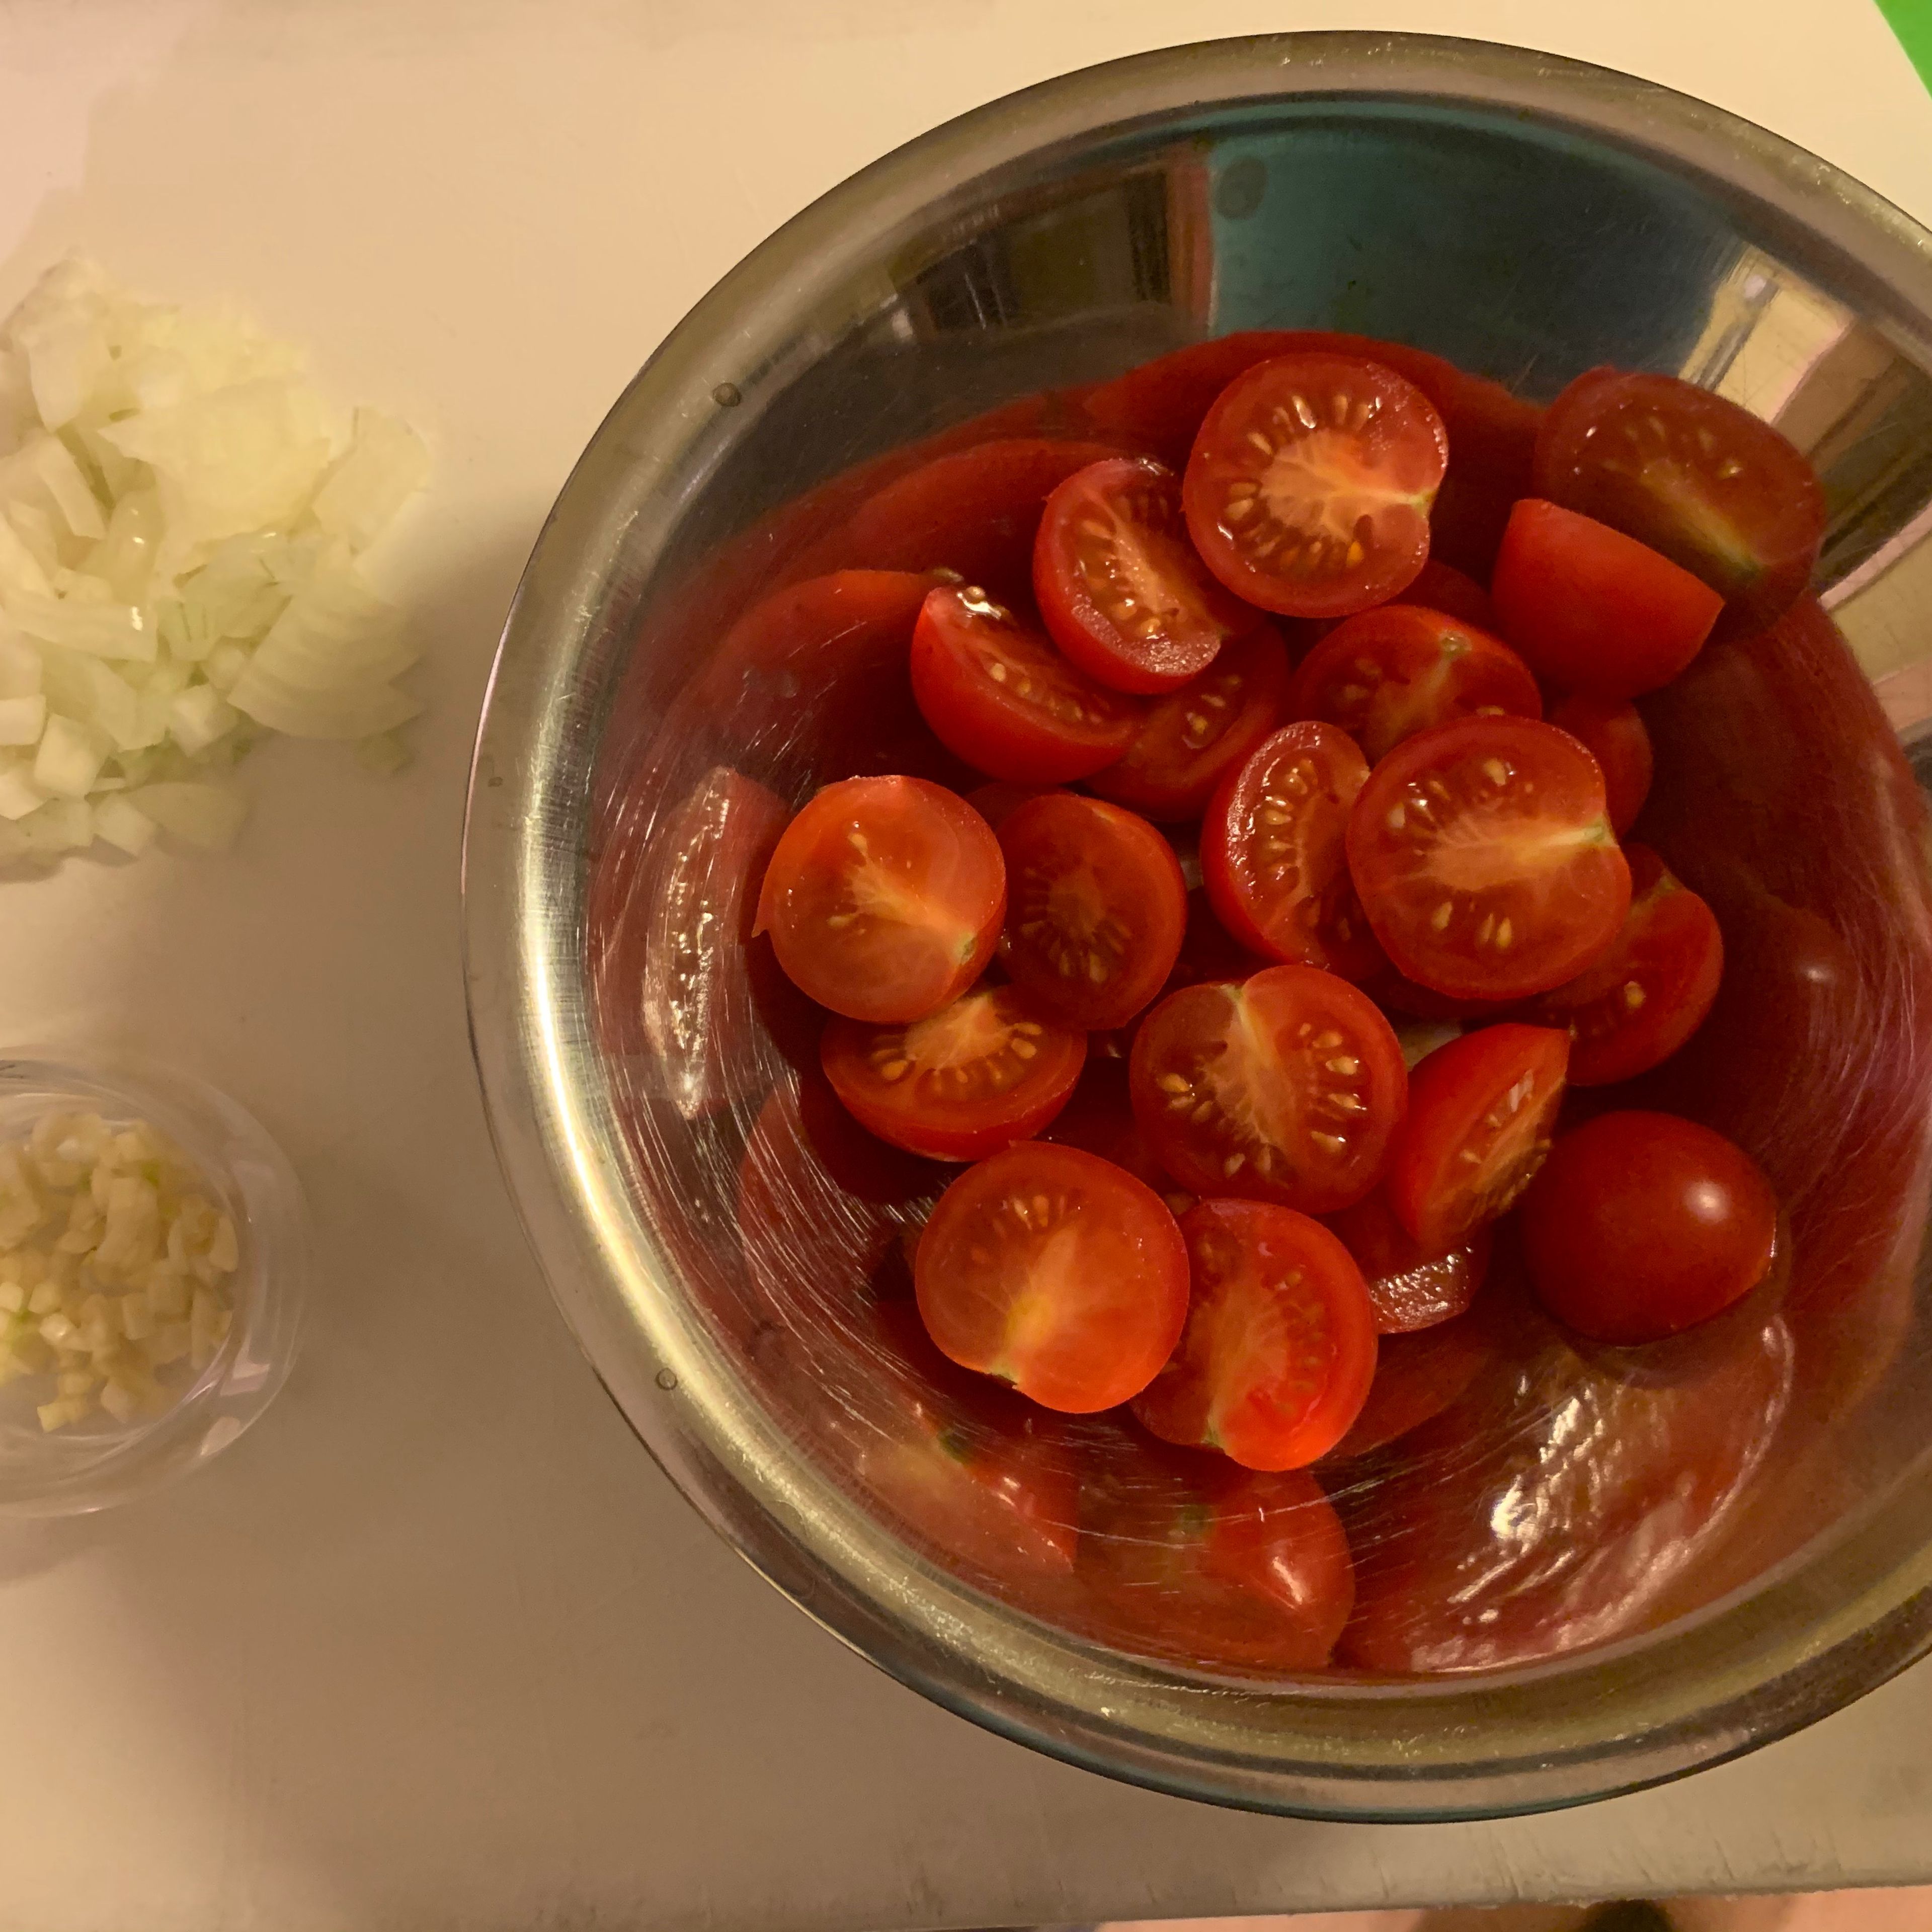 Nun die Zwiebeln und den Knoblauch in kleine Würfel schneiden. Die Tomaten halbieren